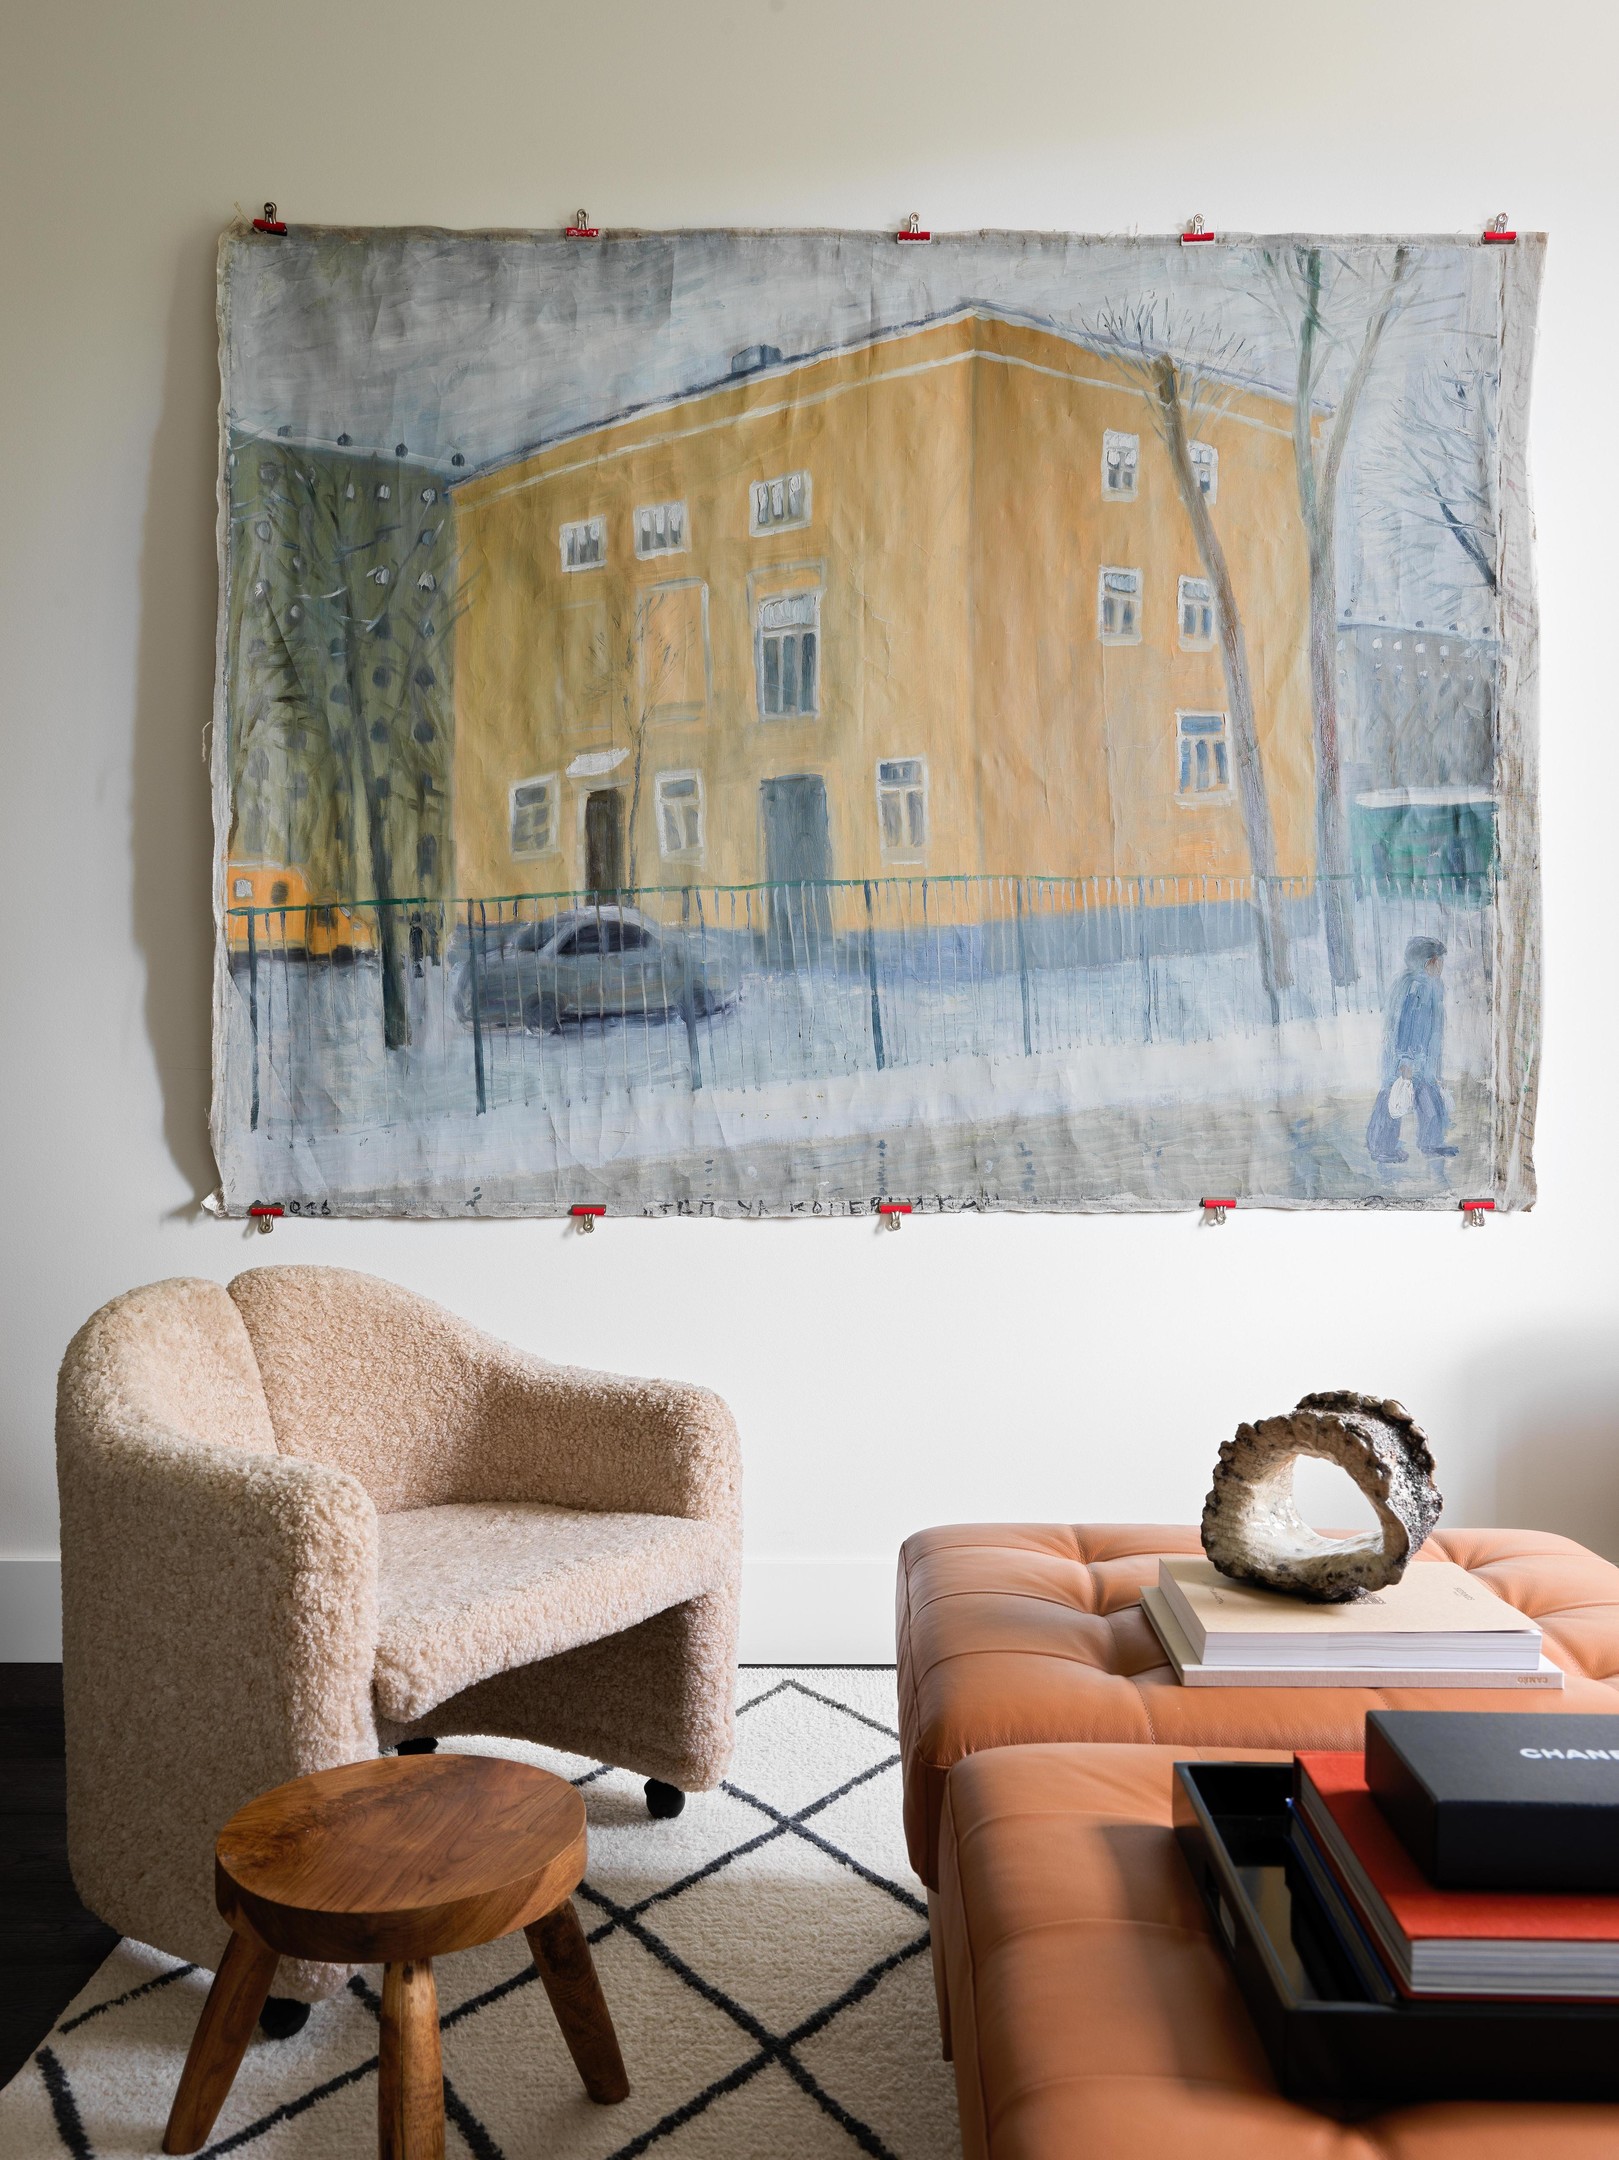 Bên cạnh ghế sofa, hai chiếc ghế đôn được ghép lại cạnh nhau tạo thành bàn nước bọc da màu nâu đậm sang trọng, càng dùng lâu càng đẹp. Cặp ghế bành màu be ấm áp với chiếc ghế đẩu bằng gỗ tạo thành chiếc 'bàn phụ' nhỏ. Tất cả bố trí trên tấm thảm trải sàn mịn mượt. Trên tường là bức tranh của họa sĩ Pyotr Bronfin.